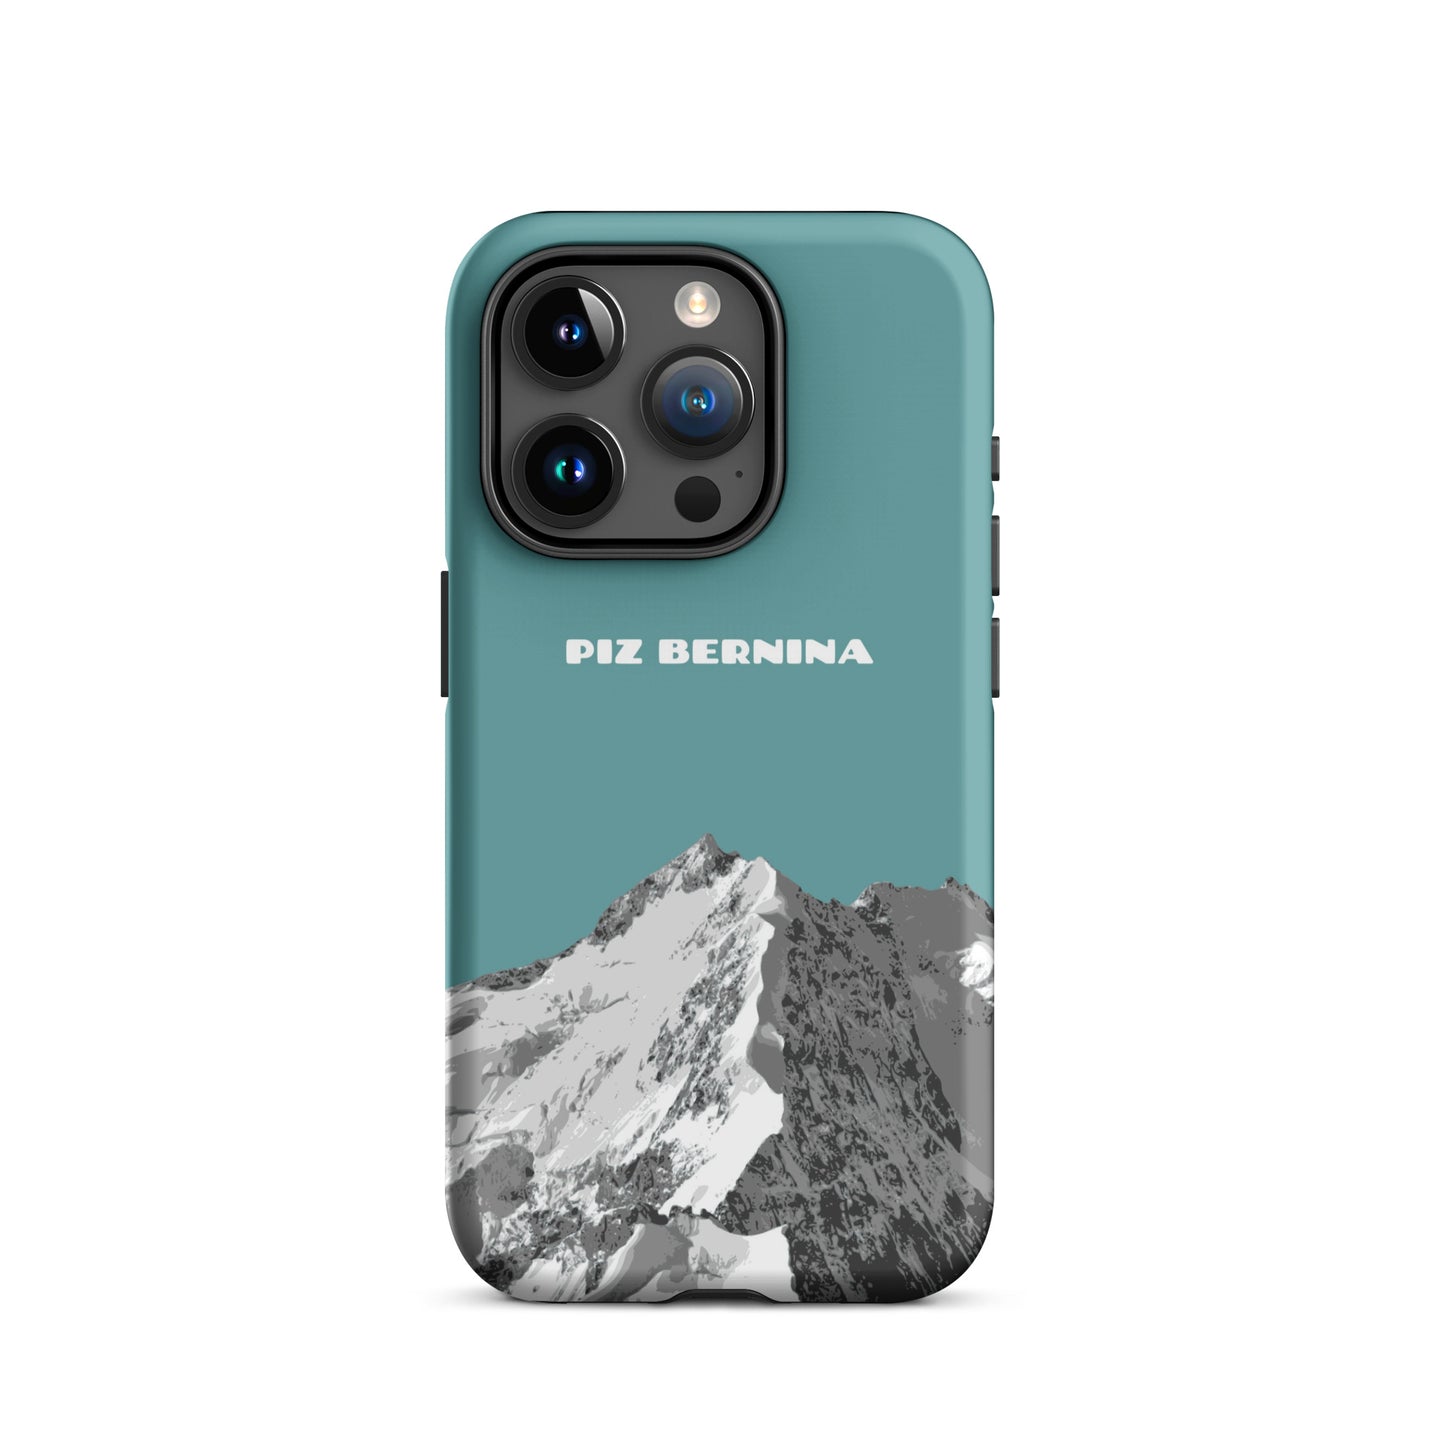 Hülle für das iPhone 15 Pro von Apple in der Farbe Kadettenblau, dass den Piz Bernina in Graubünden zeigt.